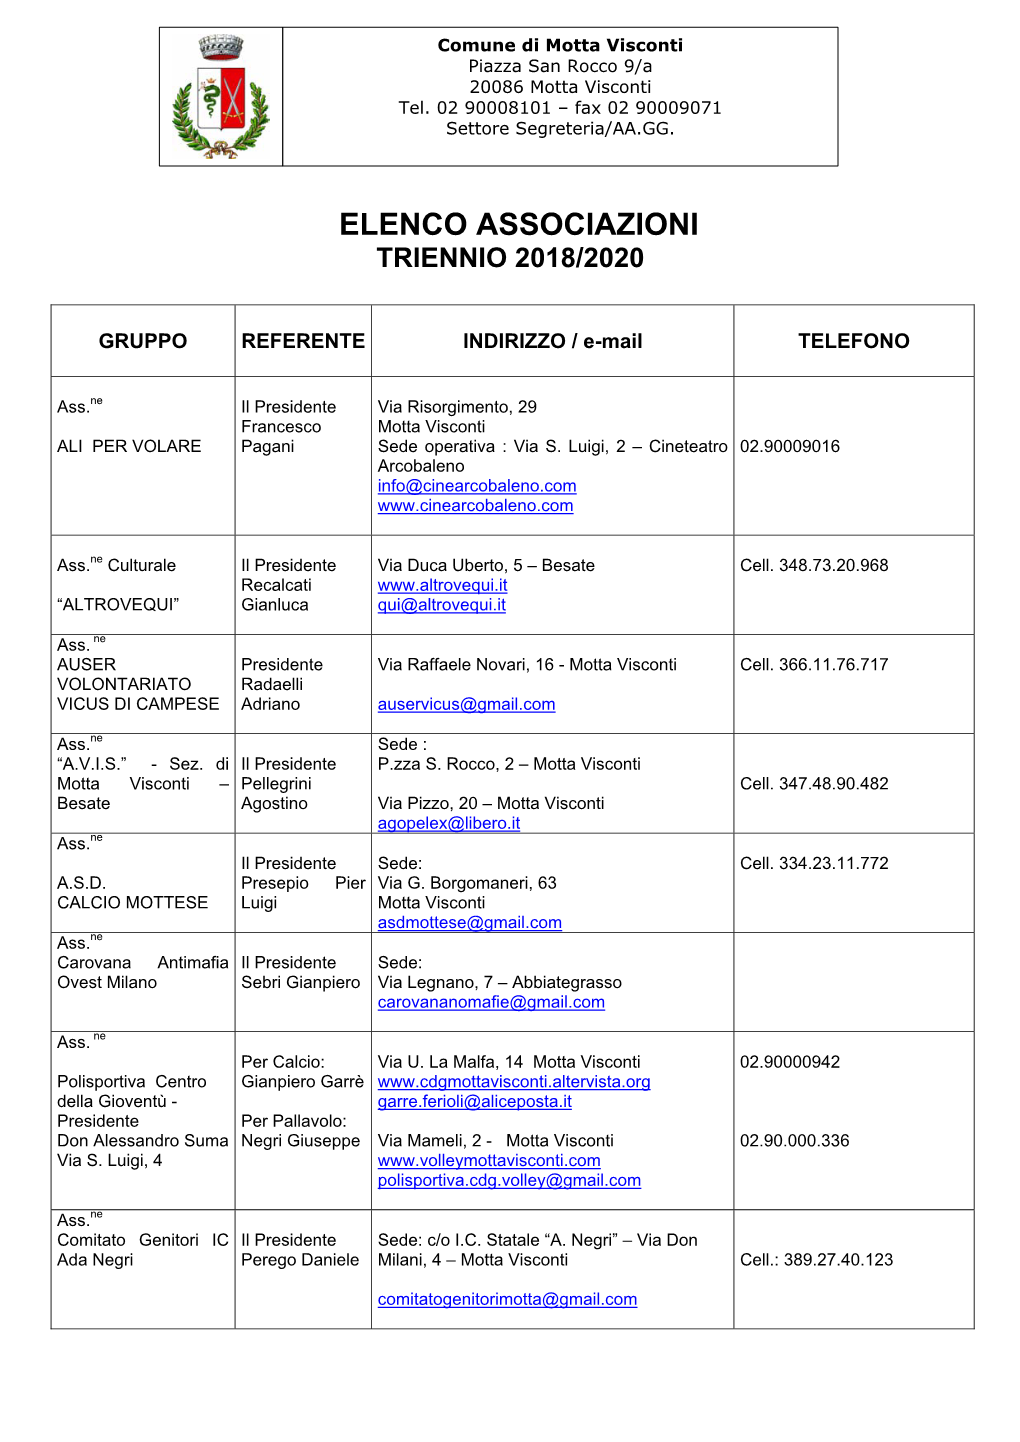 Elenco Associazioni Triennio 2018/2020